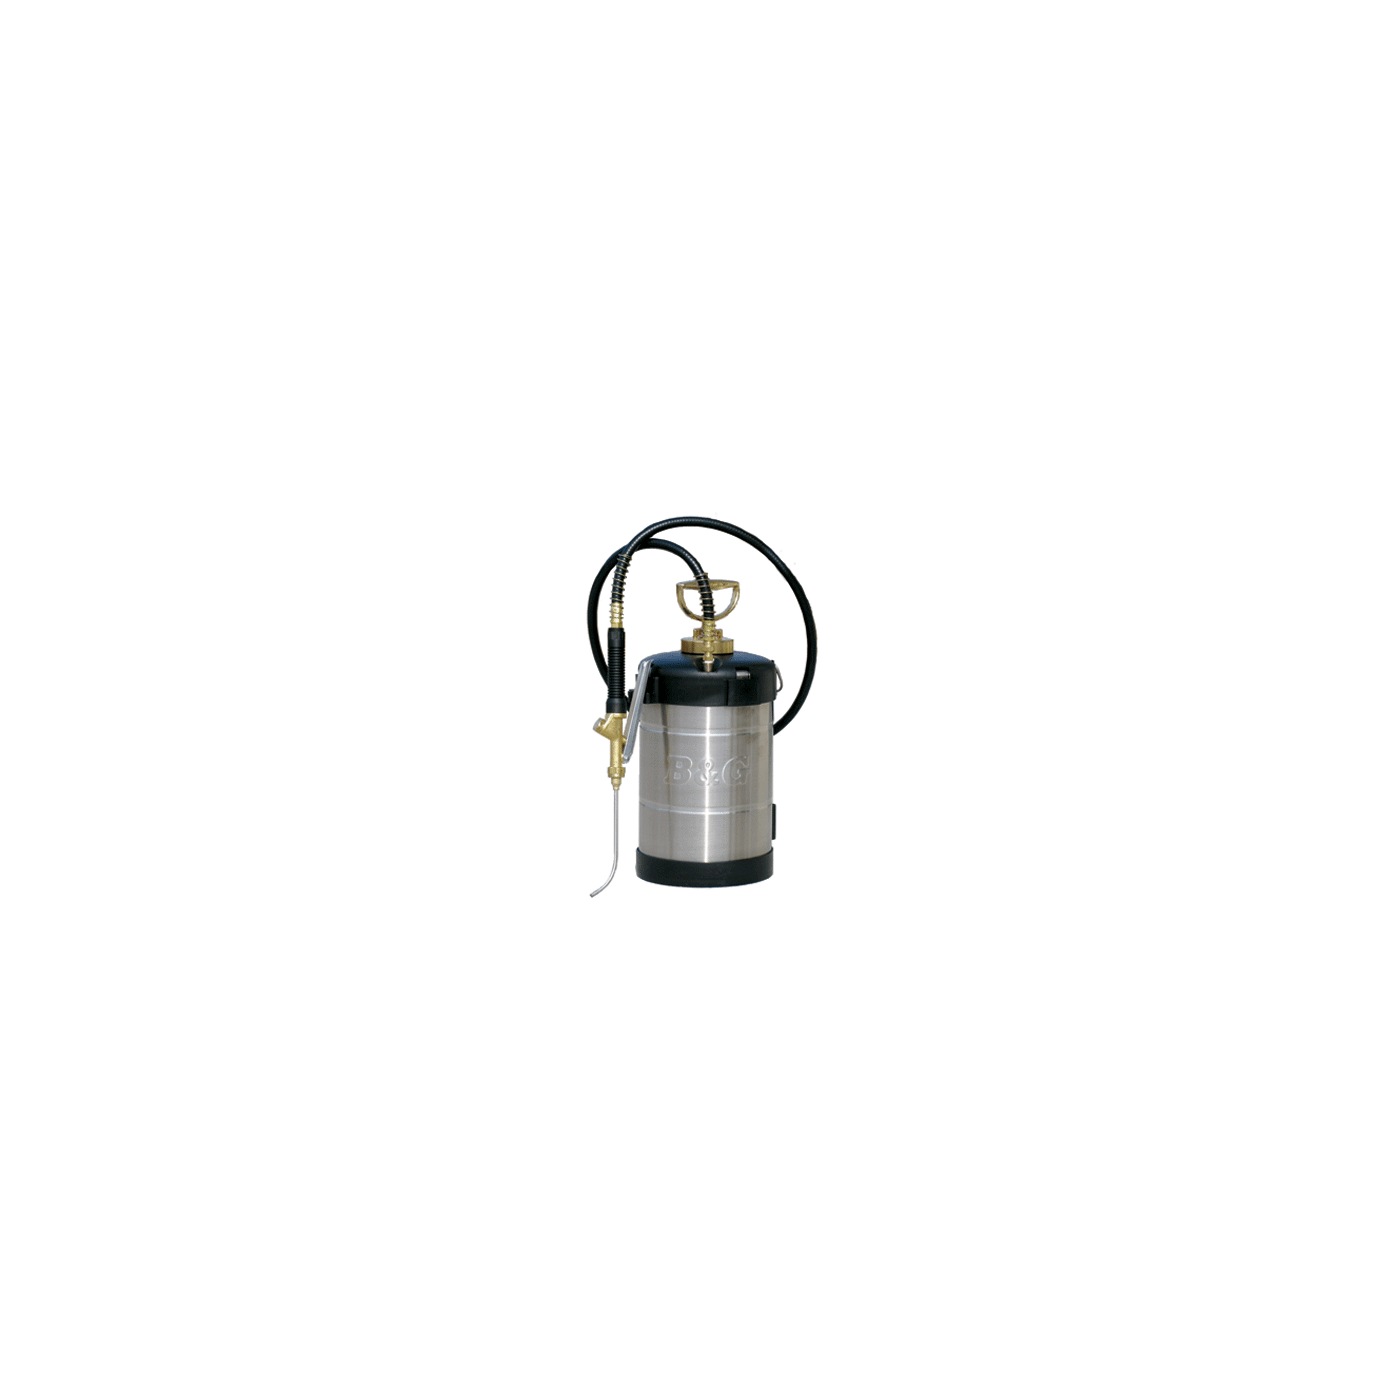 B&G Versafoamer HH - 1 gallon